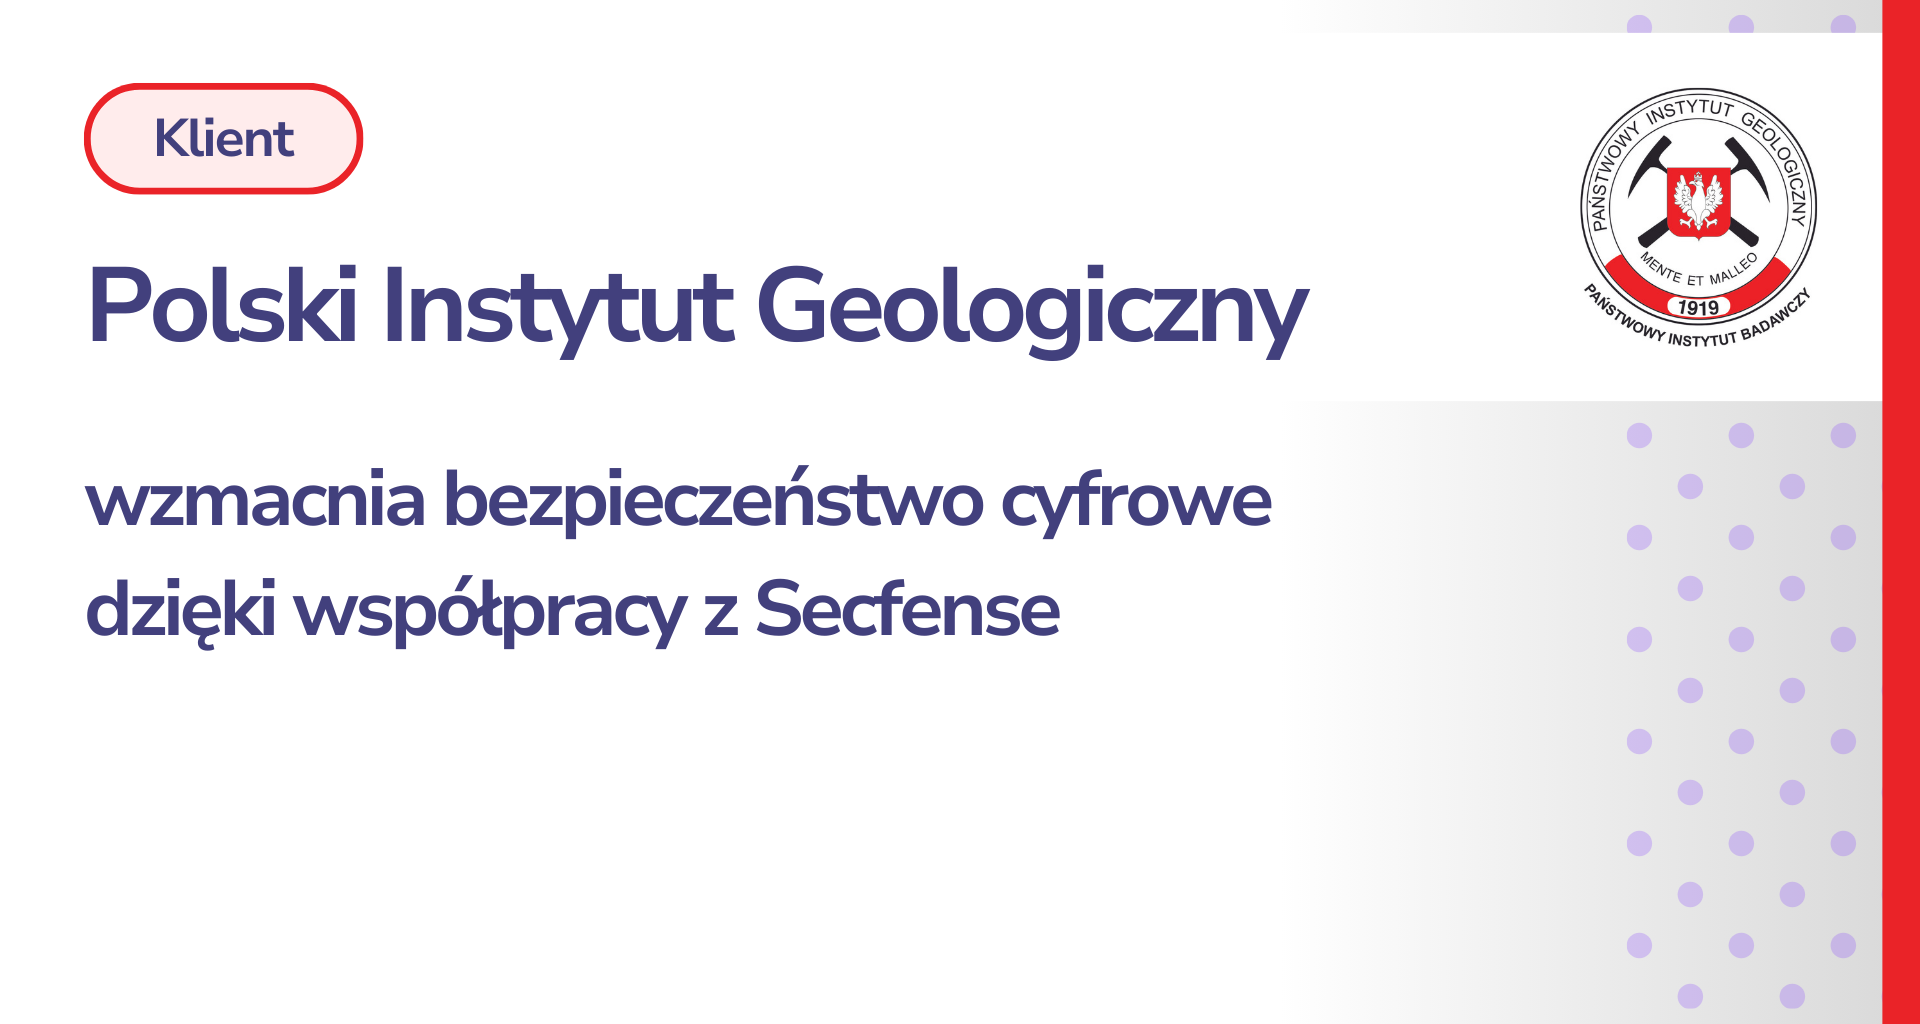 Państwowy Instytut Geologiczny wzmacnia bezpieczeństwo cyfrowe dzięki współpracy z Secfense